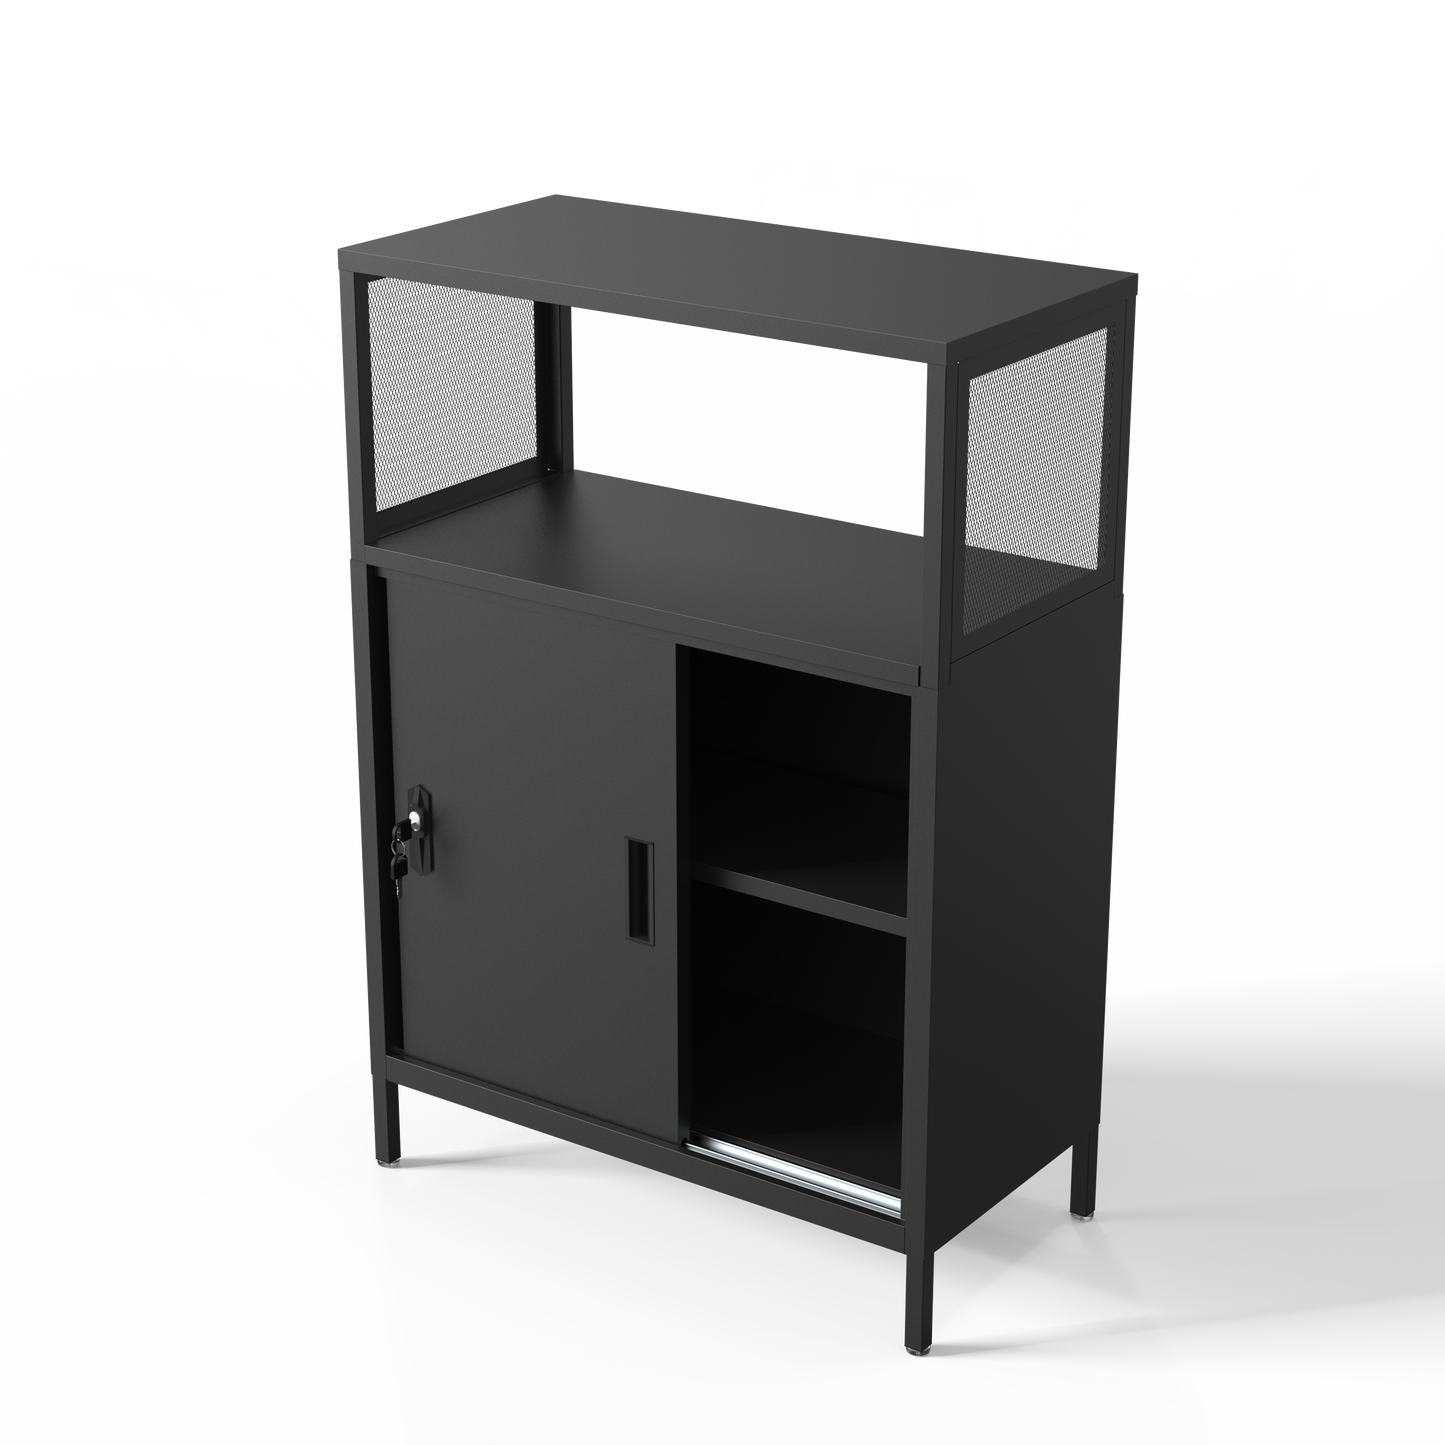 Boone Steel Storage Cabinets - Black